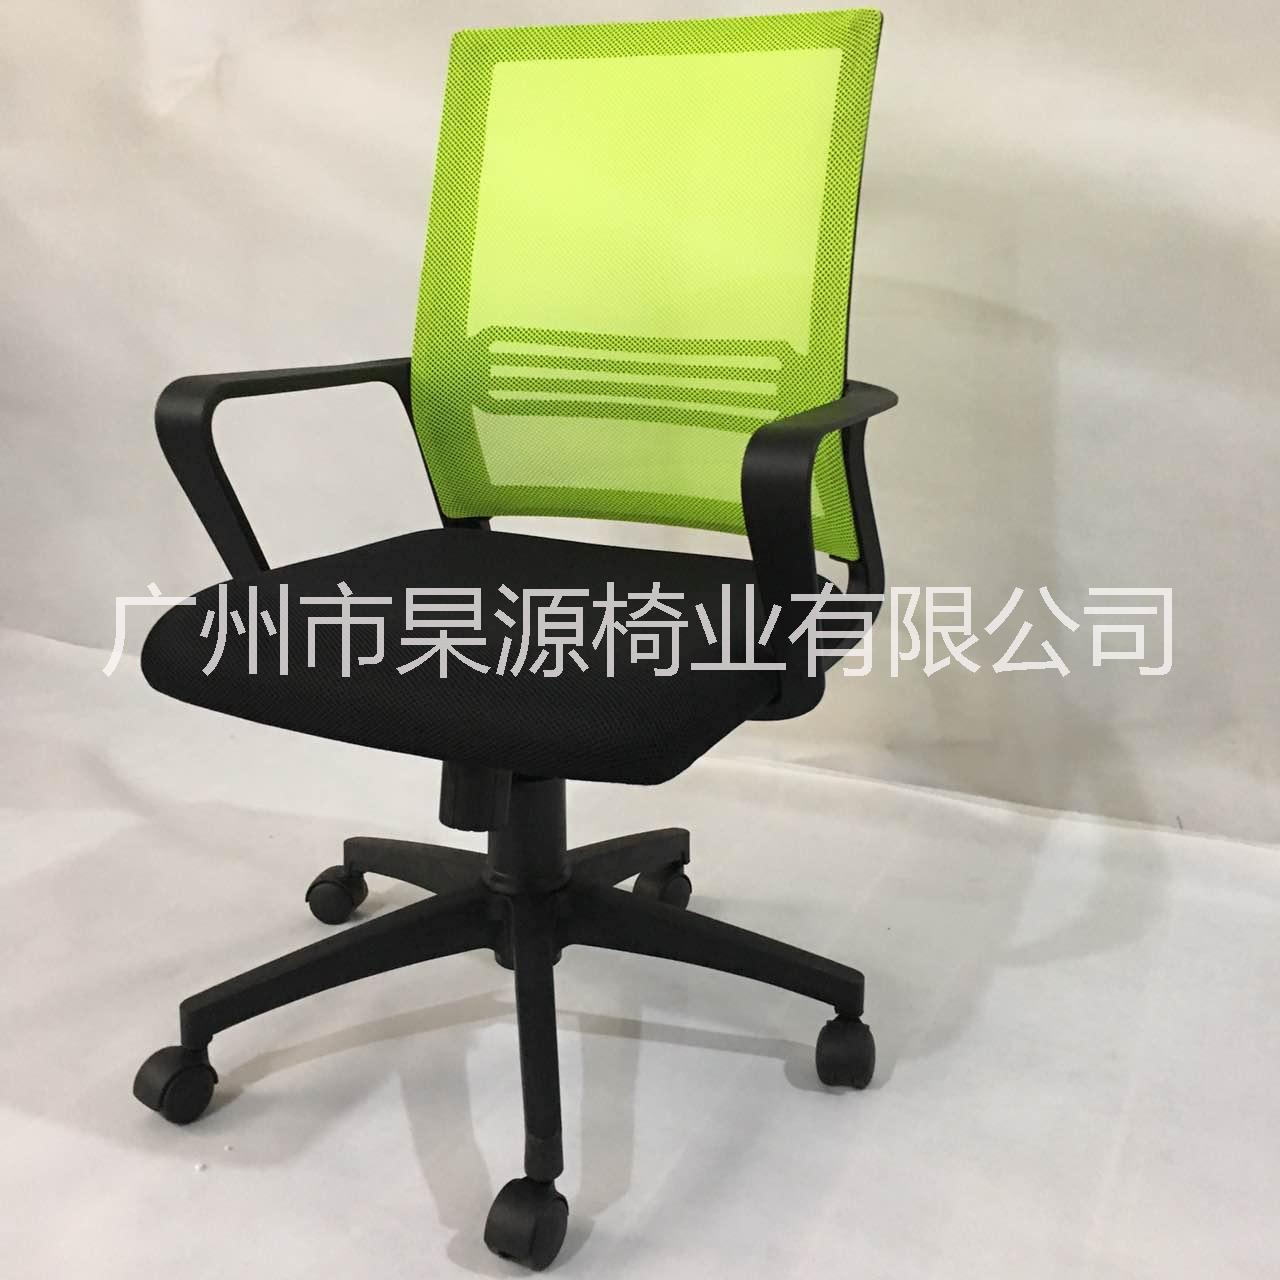 广州办公网椅批发商家 特价网布椅 特价办公椅 特价沙发 软体家具定制厂家图片